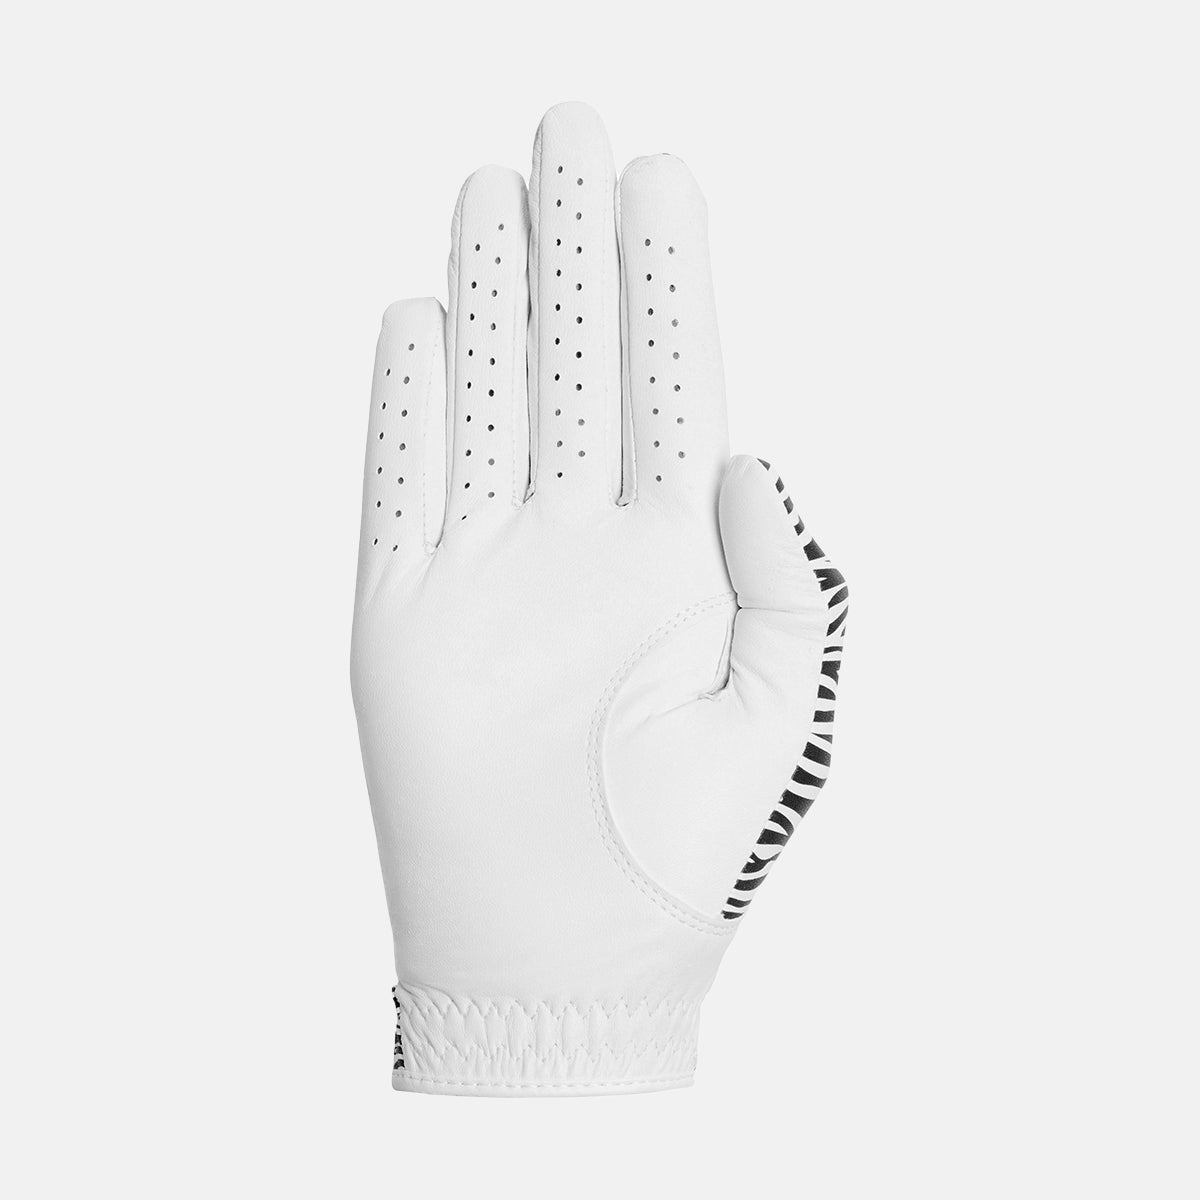 Designer Pro White/Zebra Golf Glove Right